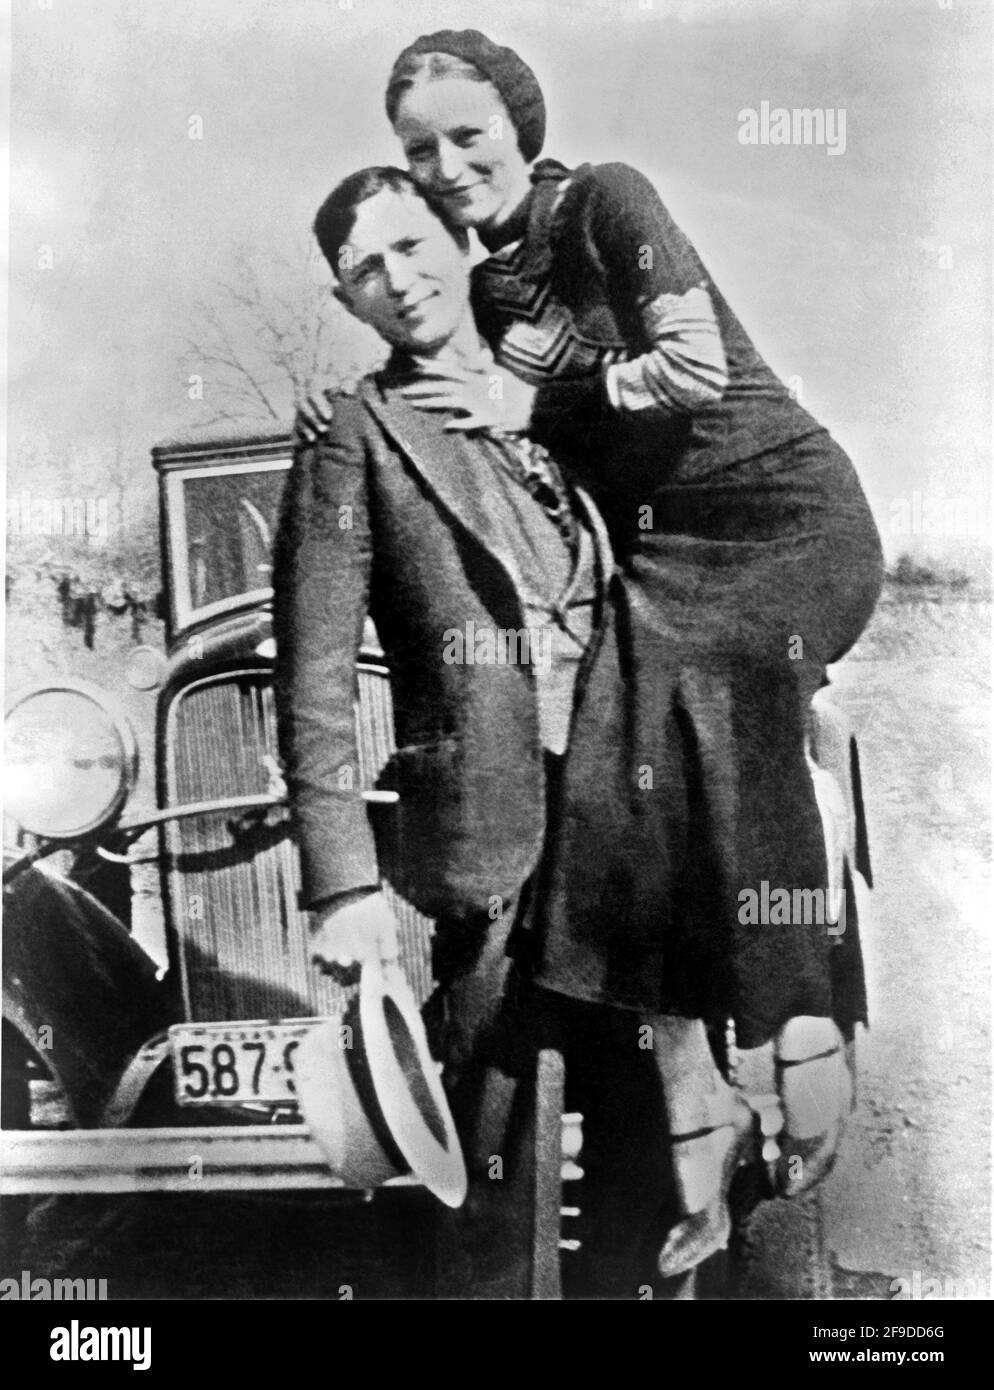 1934 , Arkansas , USA : les célèbres gangsterns BONNIE PARKER ( 1910 - 1934 ) et CLYDE BARROW ( 1909 - 1934 ). Contrairement à la croyance populaire, les deux n'ont jamais épousé. Ils étaient dans une relation de longue date. Posant devant une automobile Ford V8 1932 où Bonnie et Clyde sont morts le 23 mai 1934 . Photographe inconnu . - HORS-LA-LOI - KILLER - ASSASSINO - délinquant - criminalità organizata - GANGSTERN - Bos - CRONACA NERA - CRIMINALE - voiture - automobile - chapeau - cappello - étreinte - abbraccio -- Archivio GBB Banque D'Images